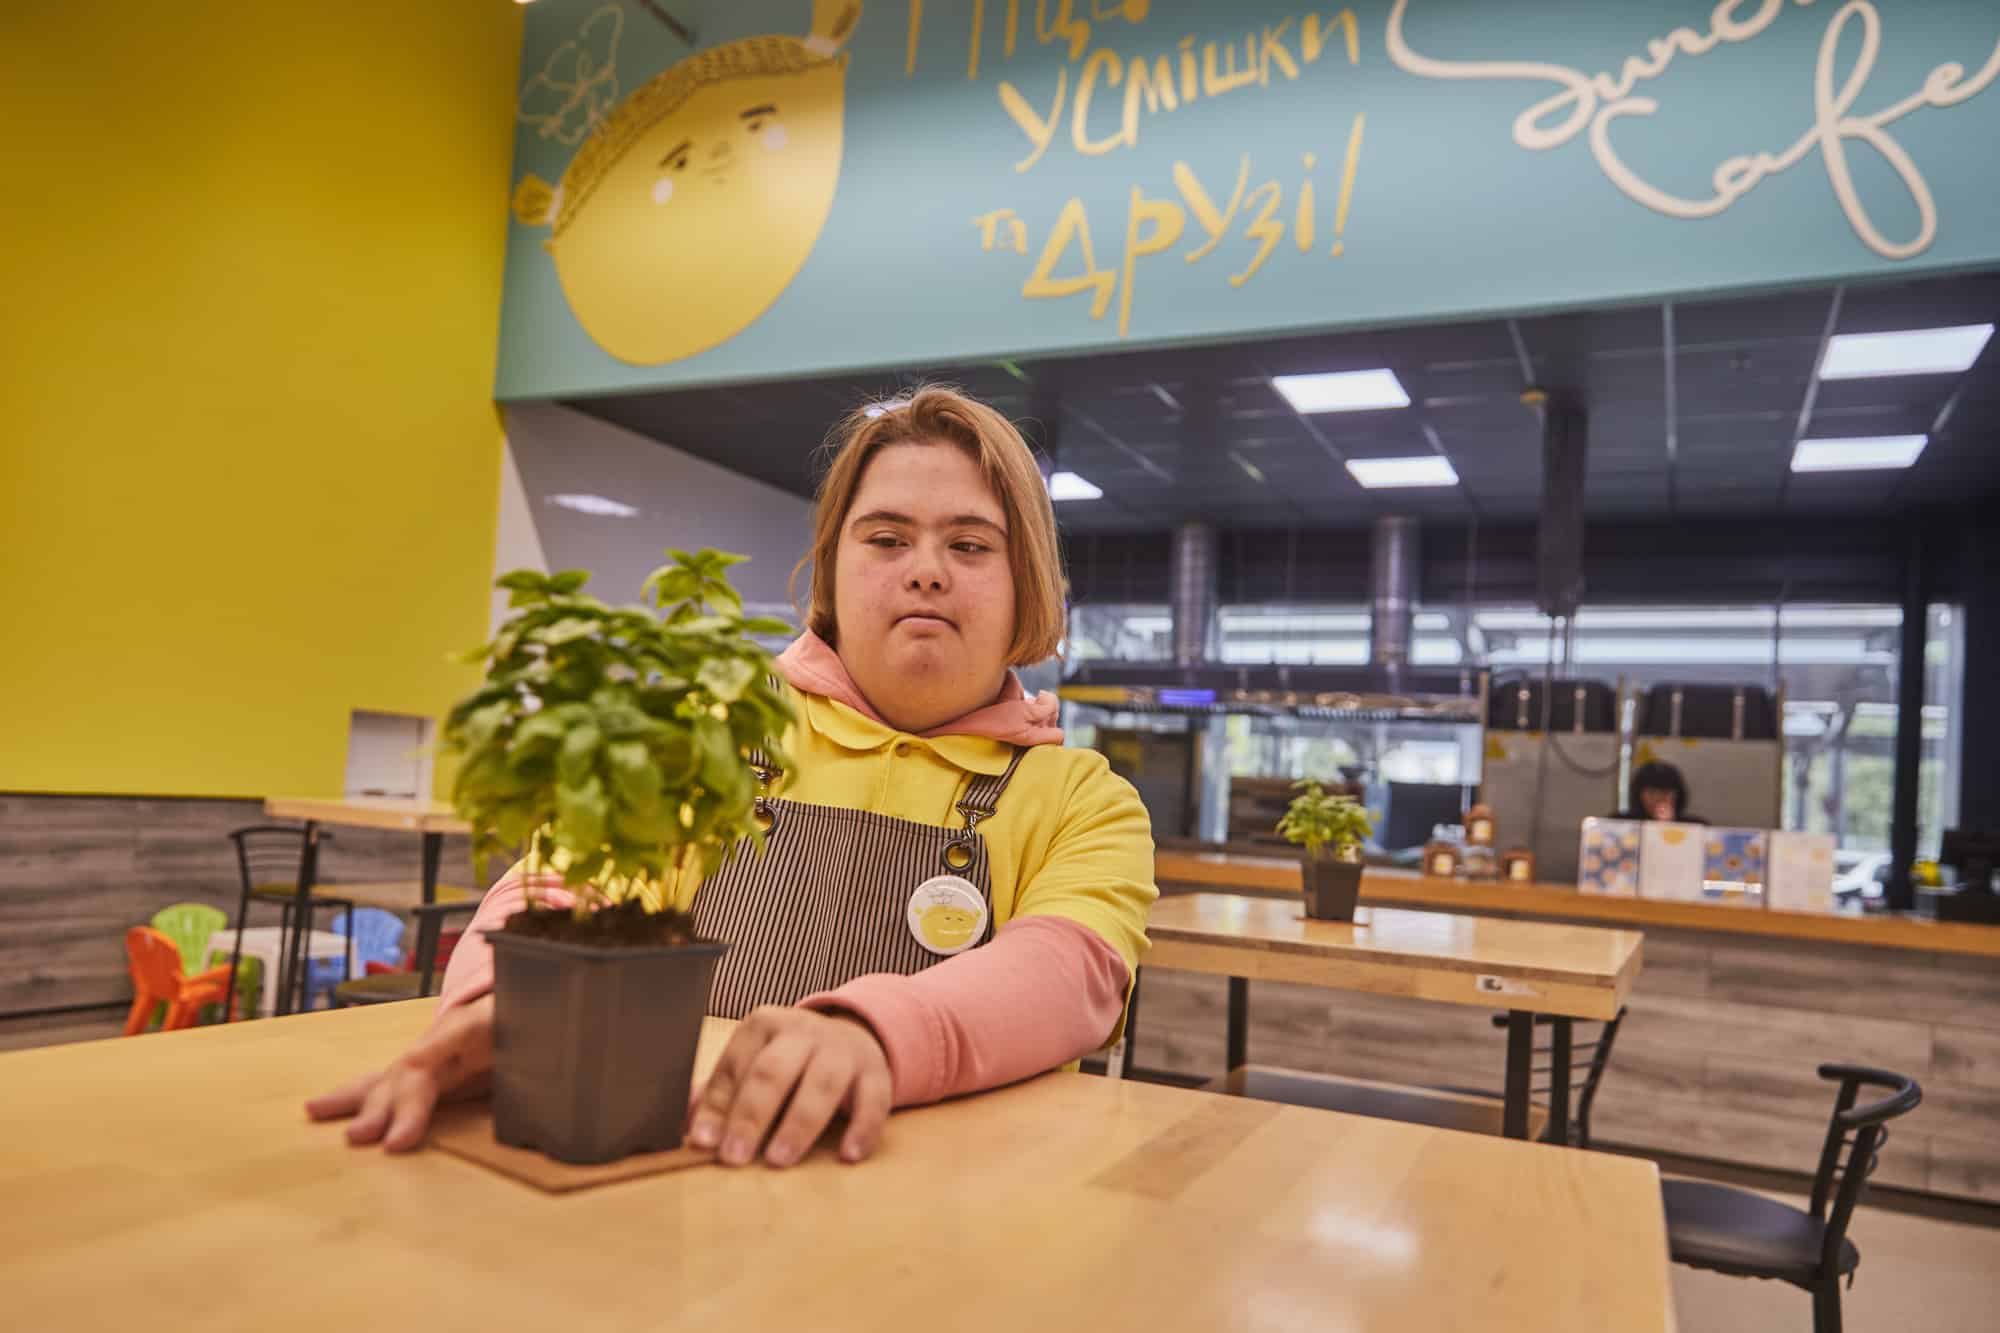 Піца й усмішки: історія Sunshine кафе, де працює молодь із інвалідністю